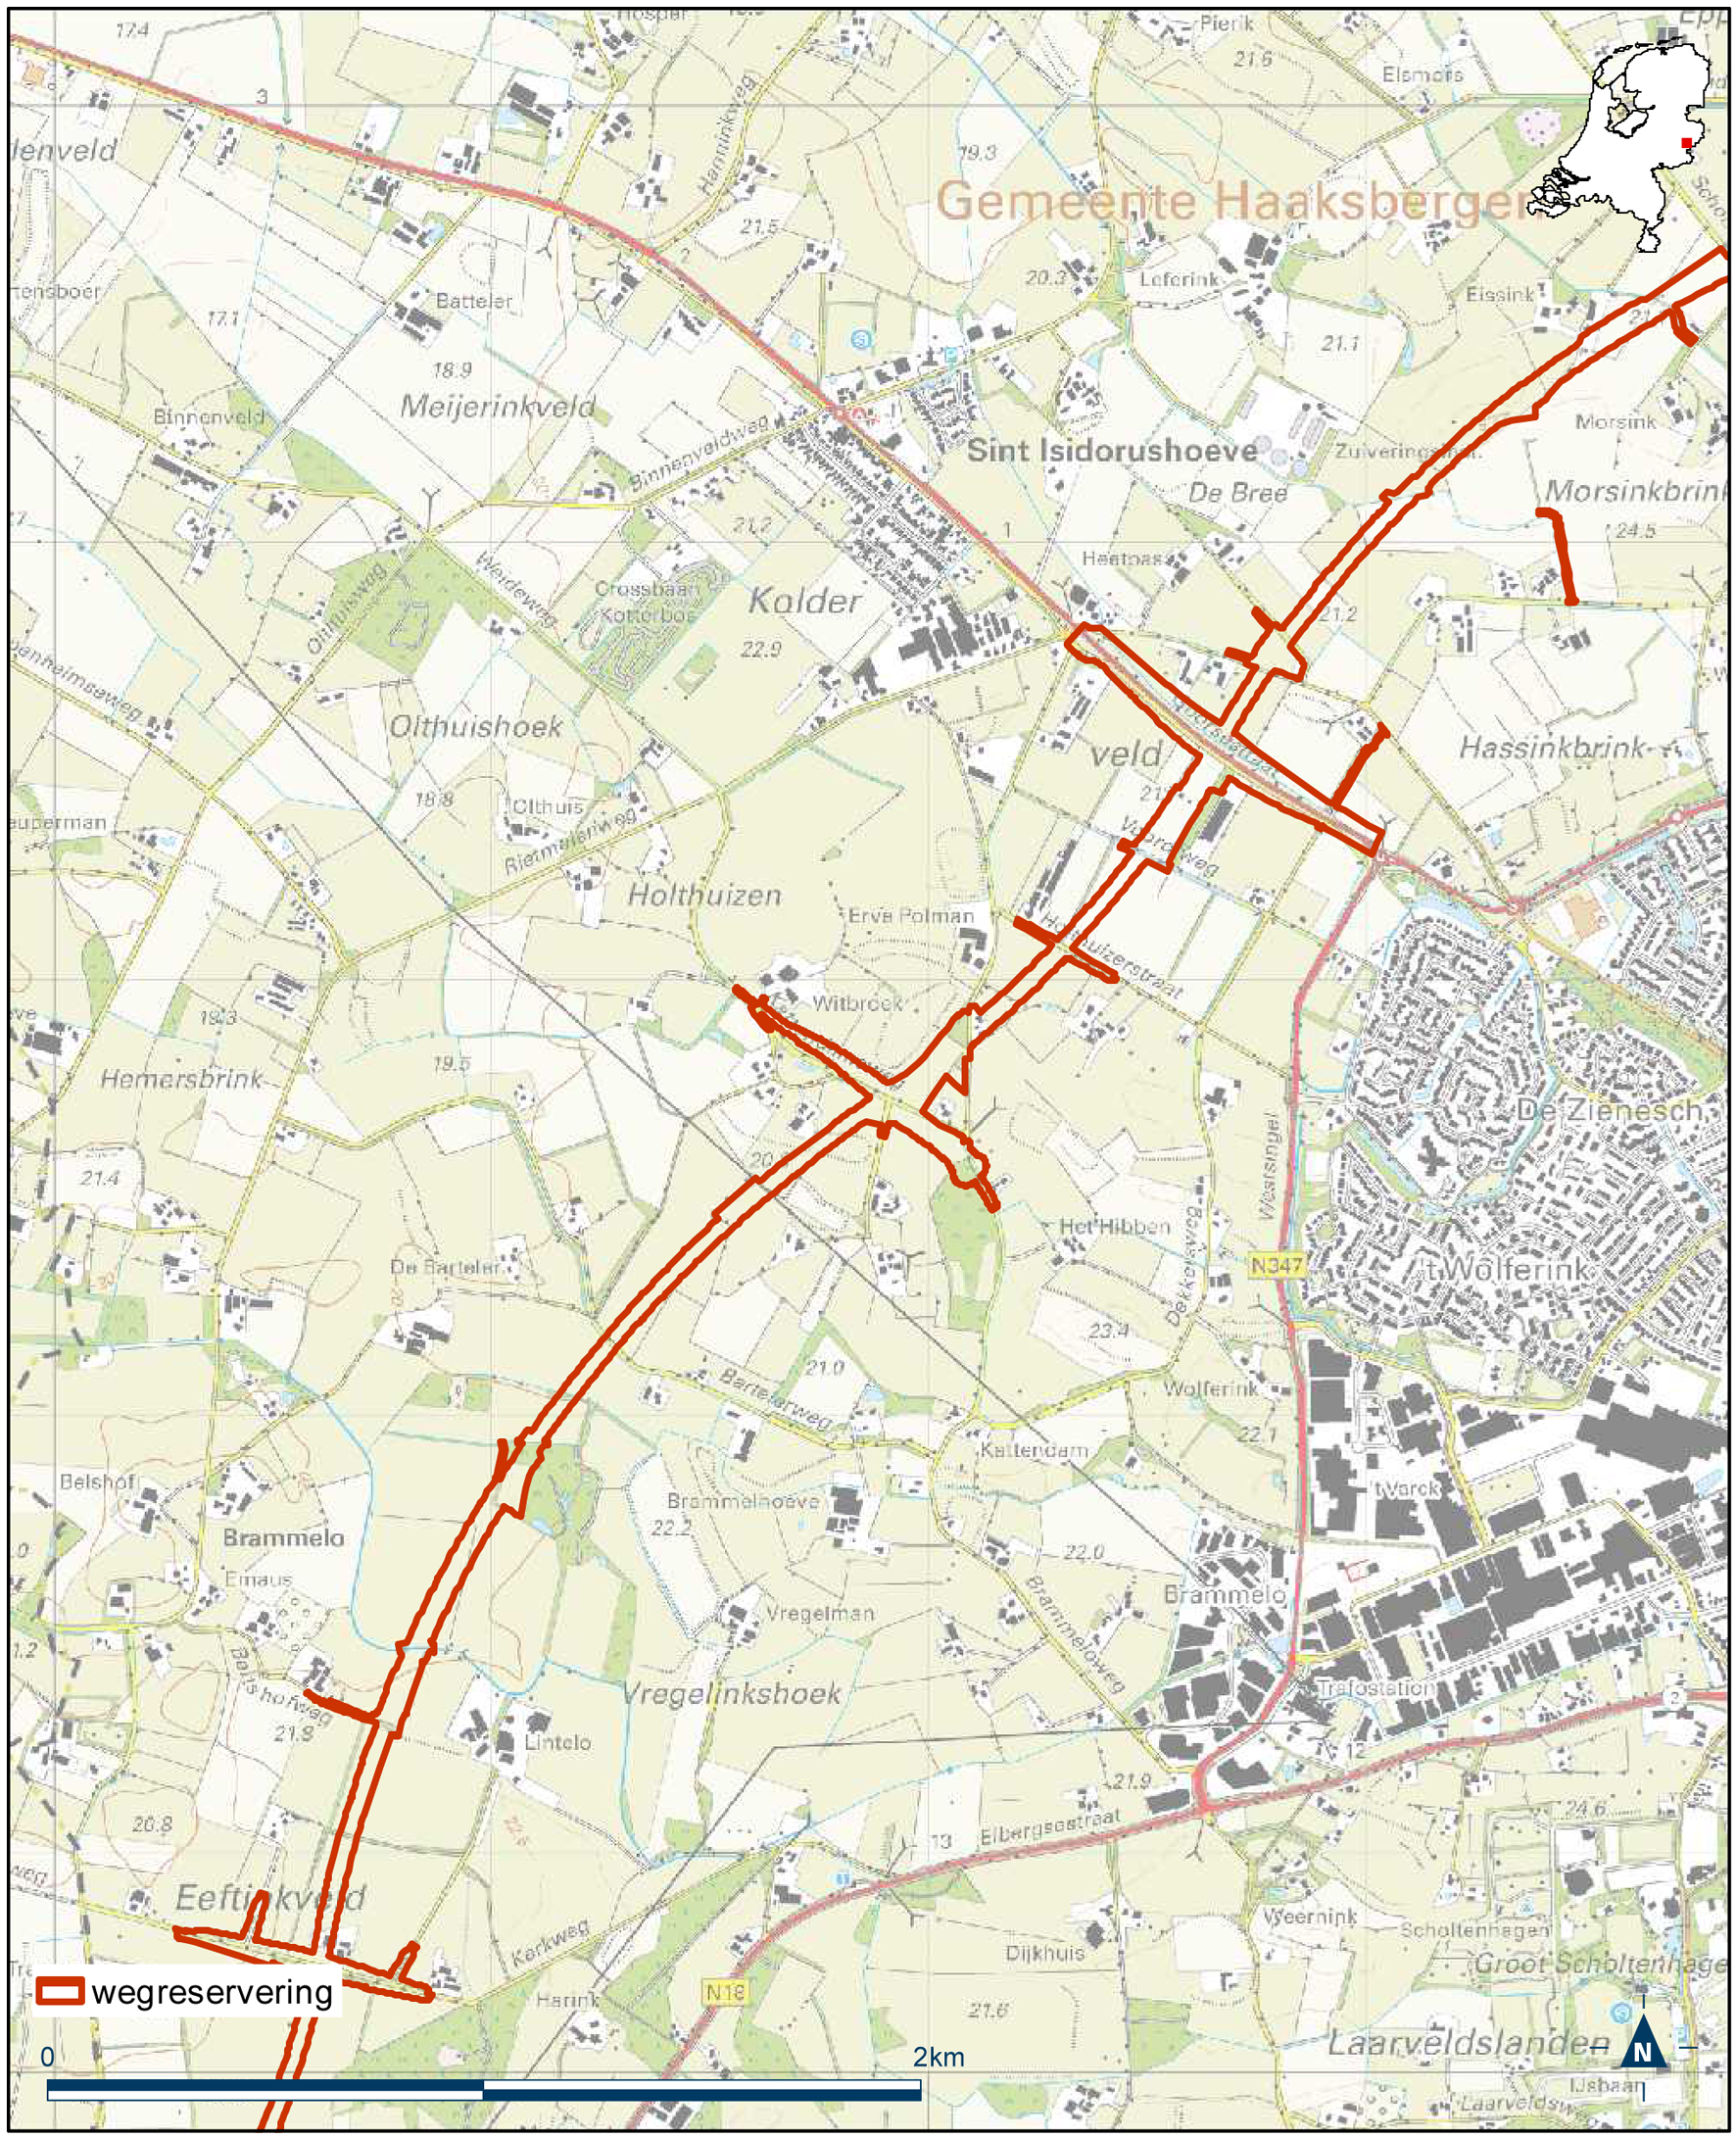 Detailkaart 8 reserveringsgebied nieuwe hoofdweg N18 Varsseveld-Enschede